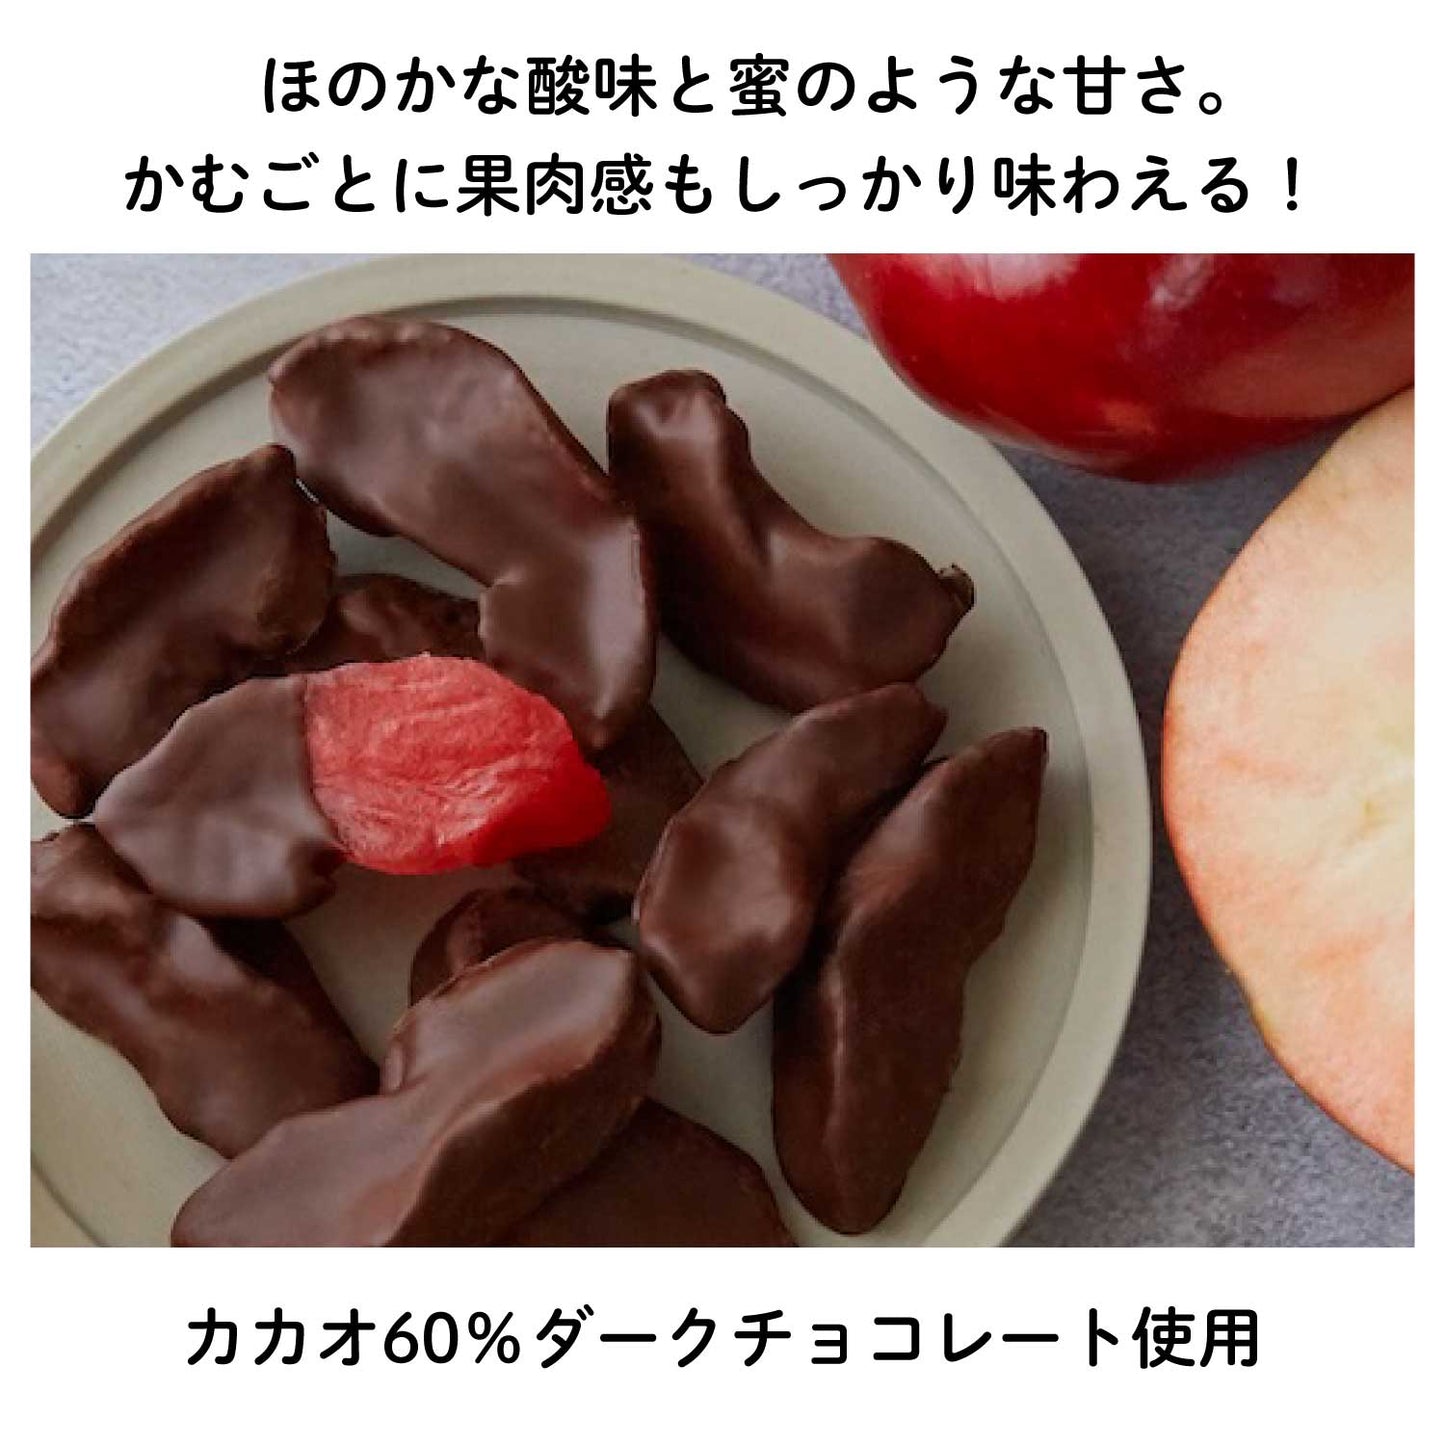 奇跡のりんご”紅の夢”アップルチョコレート